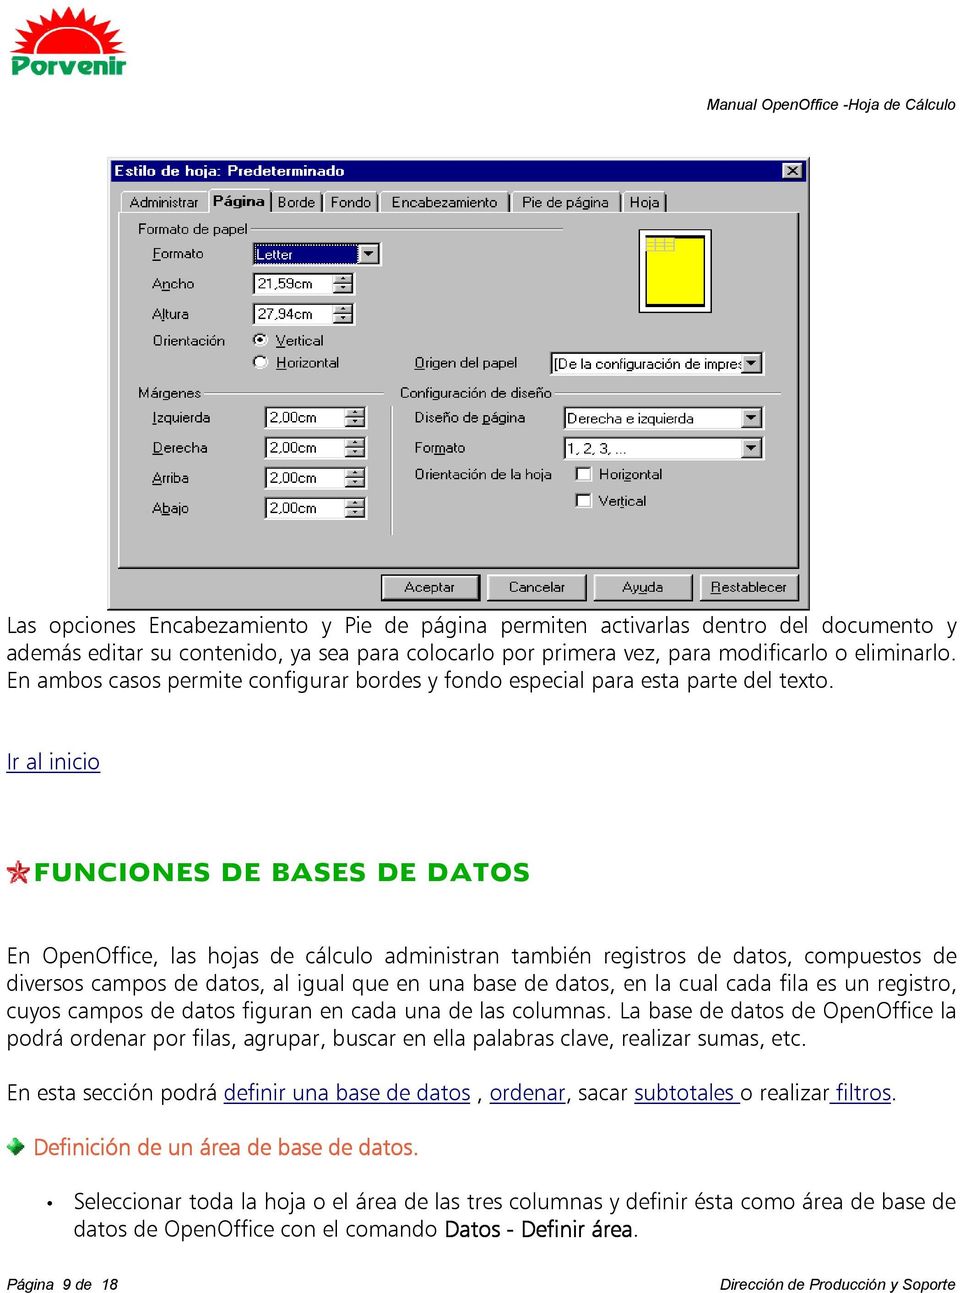 FUNCIONES DE BASES DE DATOS En OpenOffice, las hojas de cálculo administran también registros de datos, compuestos de diversos campos de datos, al igual que en una base de datos, en la cual cada fila